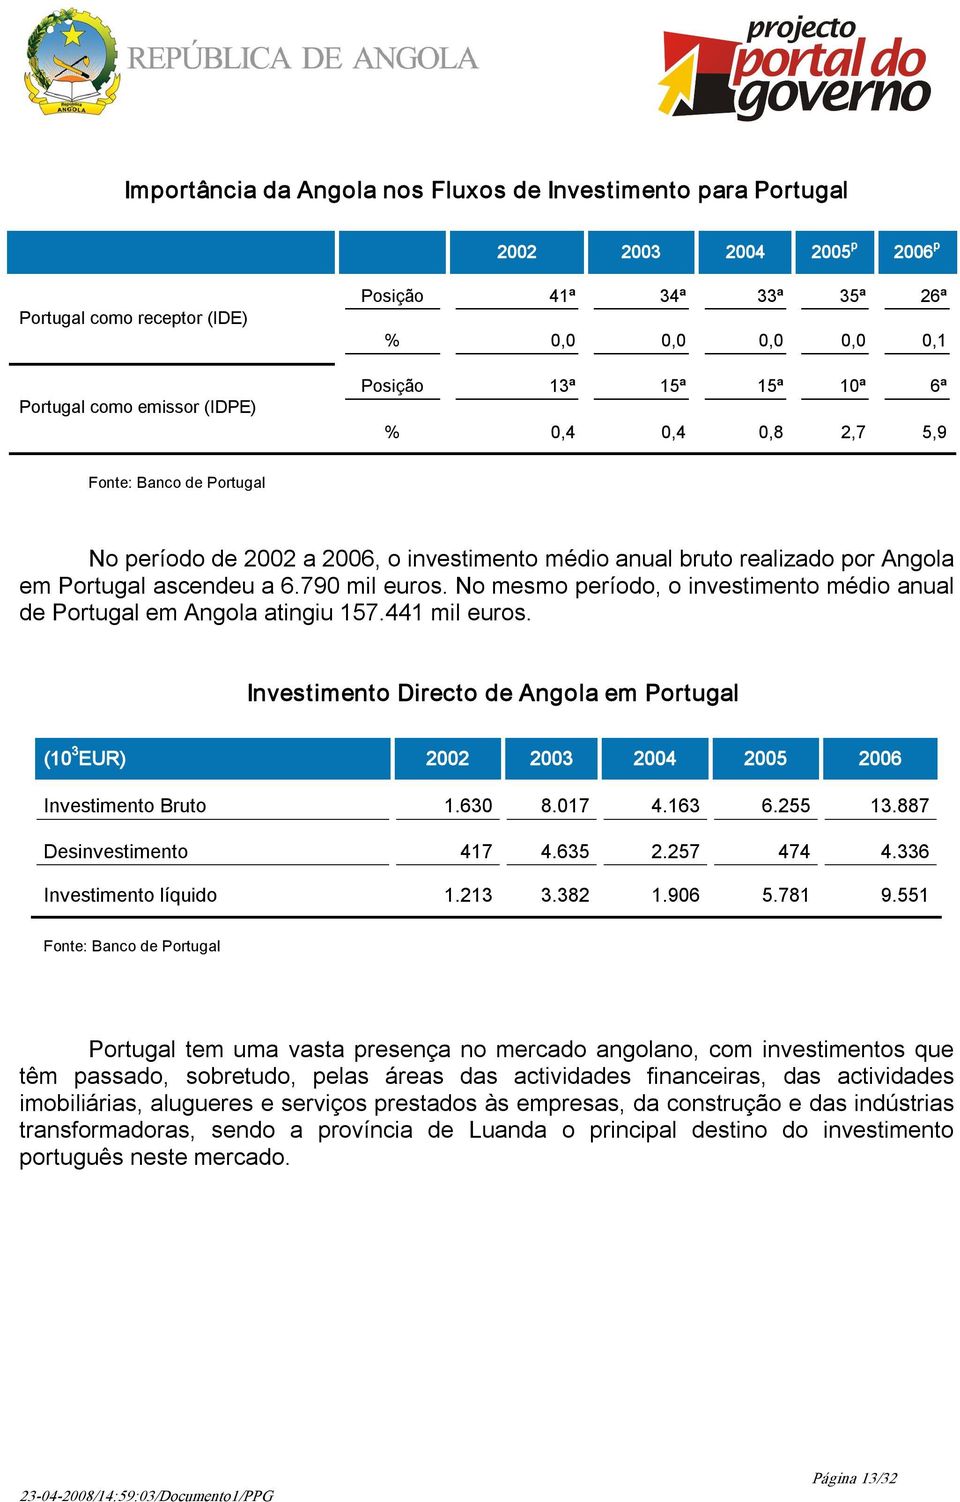 No mesmo período, o investimento médio anual de Portugal em Angola atingiu 157.441 mil euros. Investimento Directo de Angola em Portugal (10 3 EUR) 2002 2003 2004 2005 2006 Investimento Bruto 1.630 8.